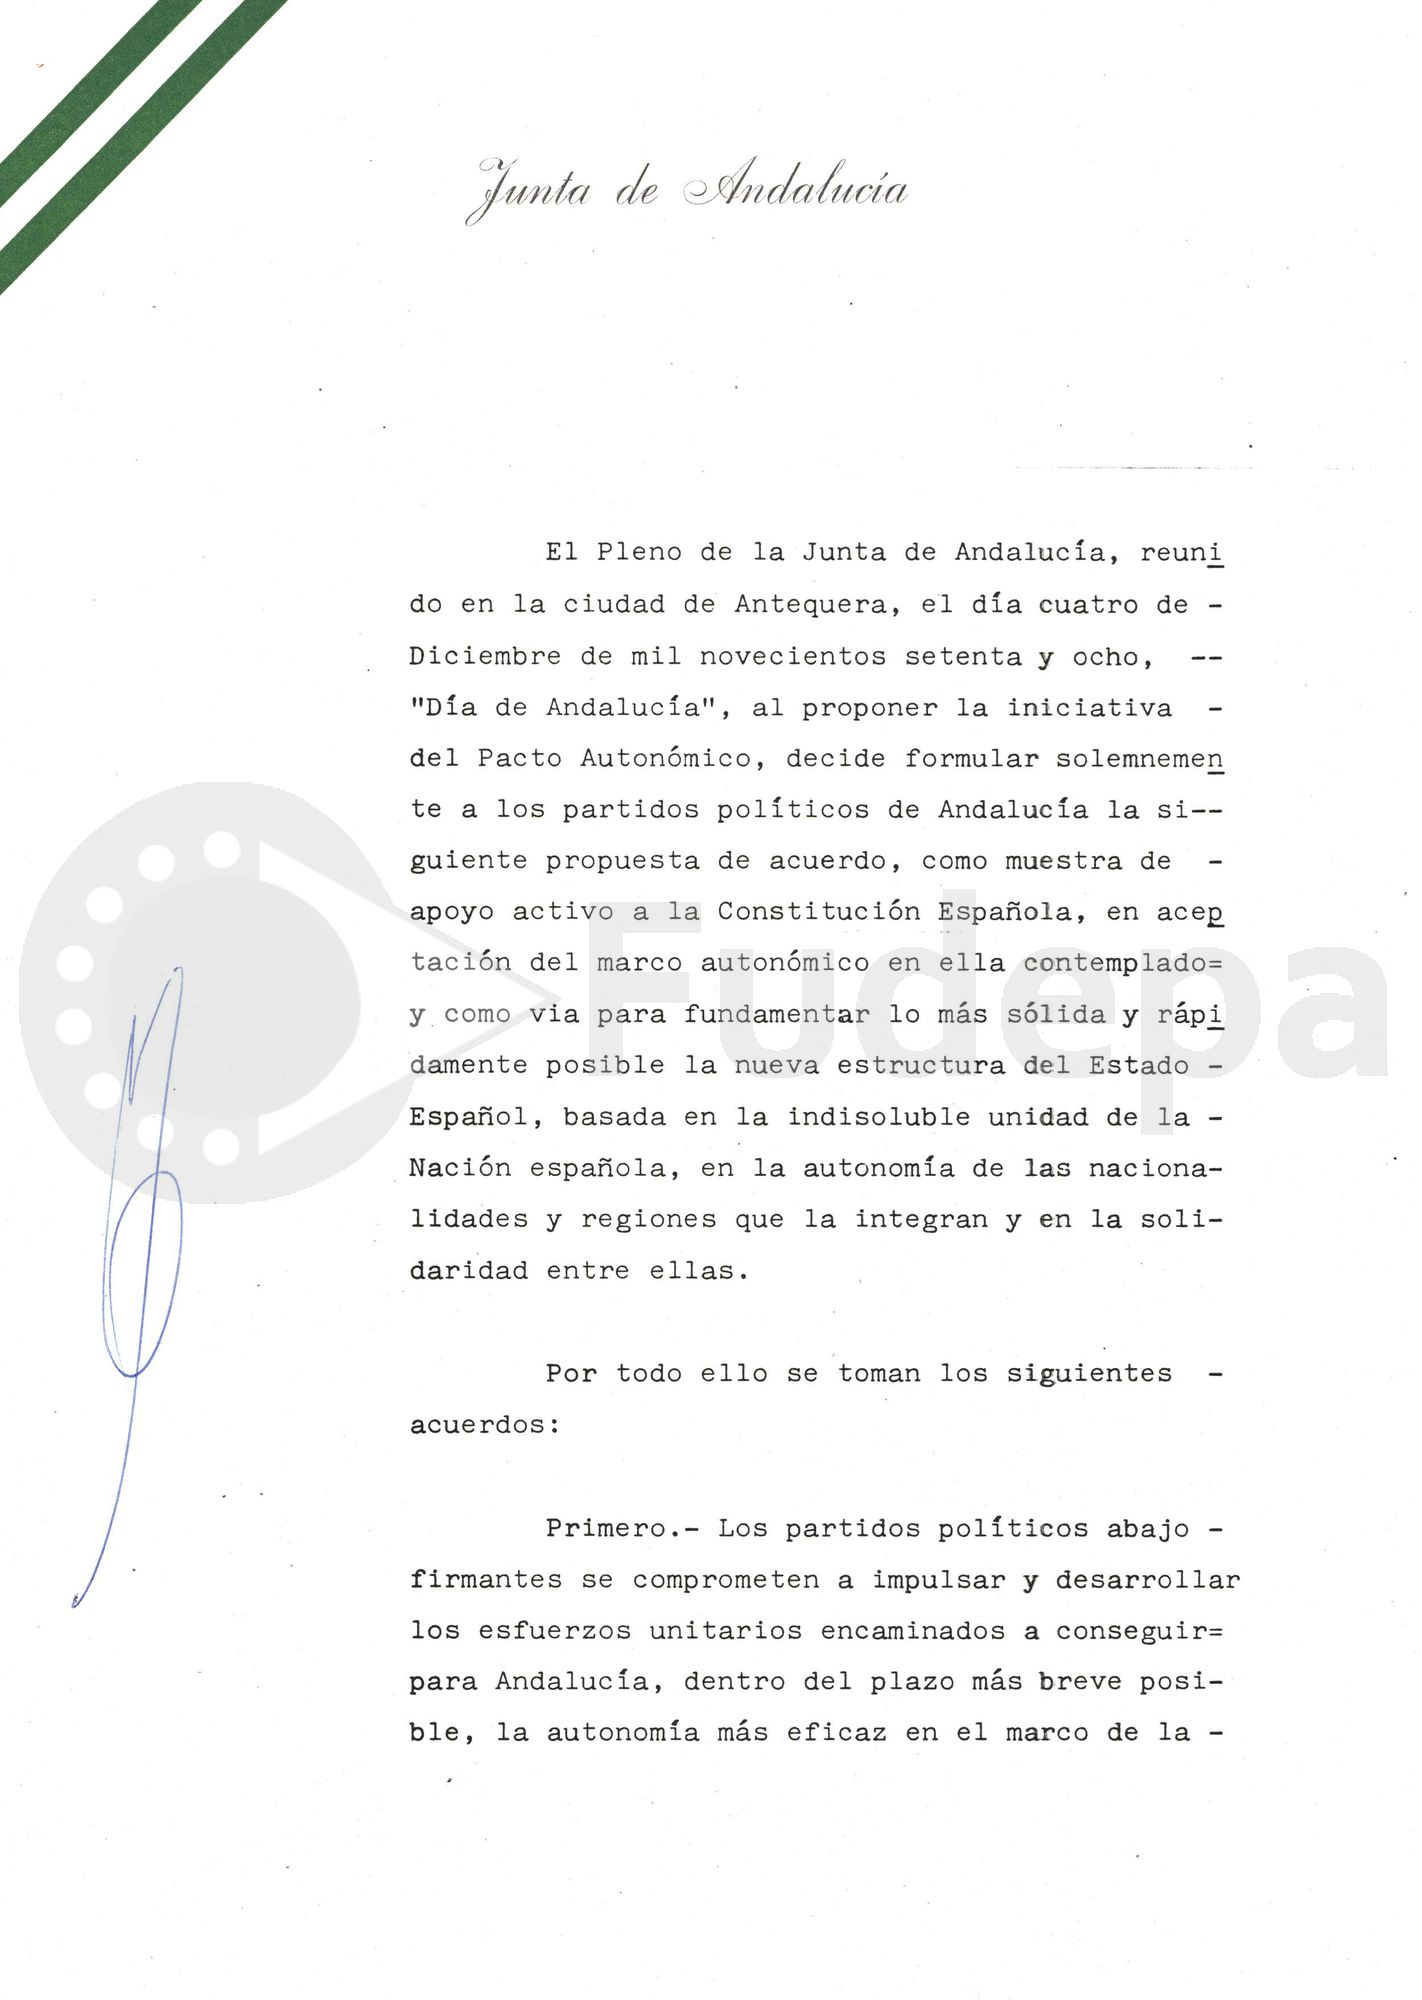 El 4 de diciembre de 1978 se firma el denominado "Pacto de Antequera", por el que 11 partidos con implantación en Andalucía se comprometen a aunar esfuerzos para conseguir, dentro del plazo más breve posible, "la autonomía más eficaz en el marco de la Constitución".
(FUDEPA_AHUGTA: donado por Manuel del Valle Arévalo)